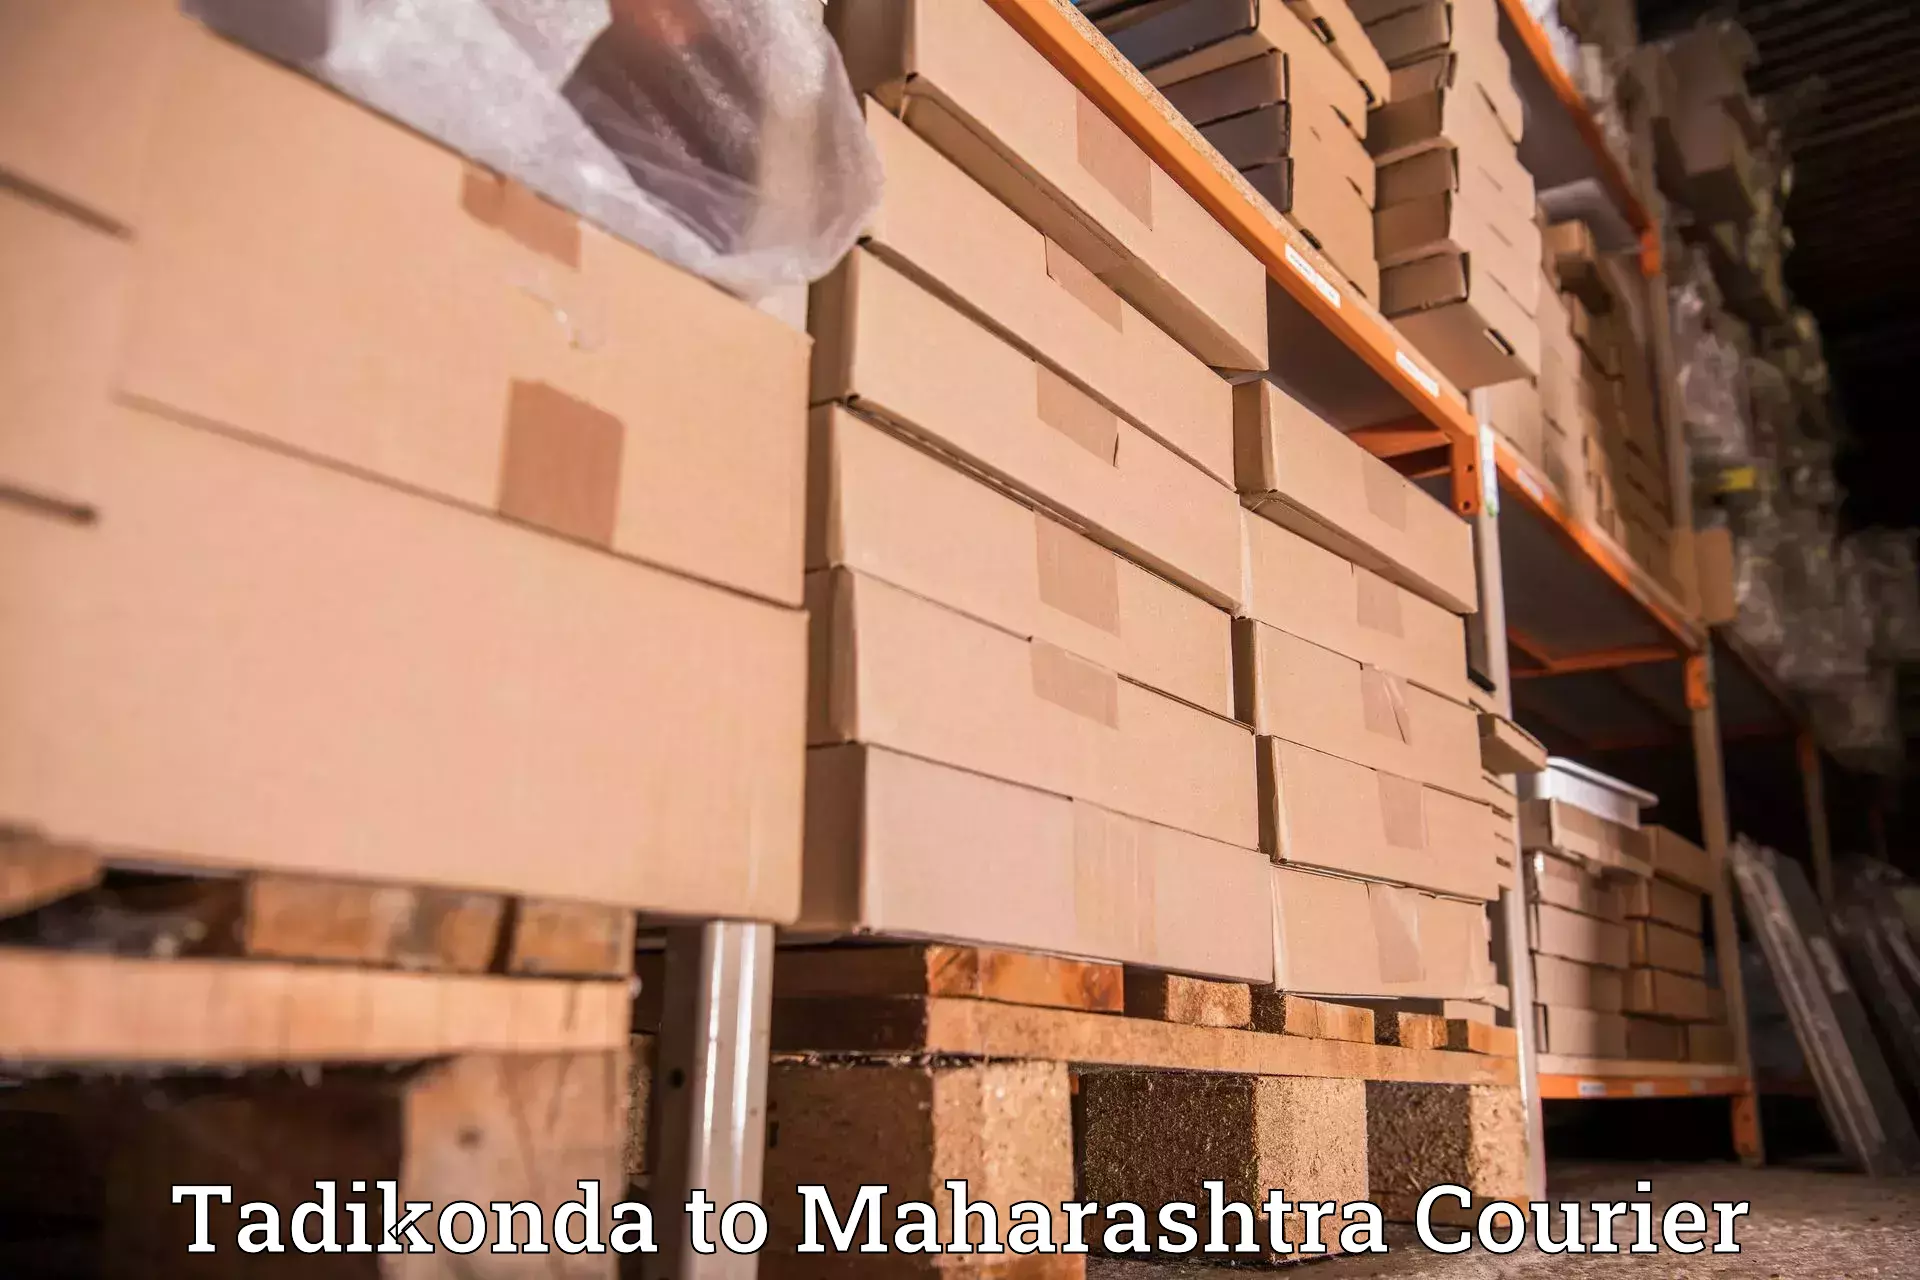 Speedy delivery service Tadikonda to Maharashtra